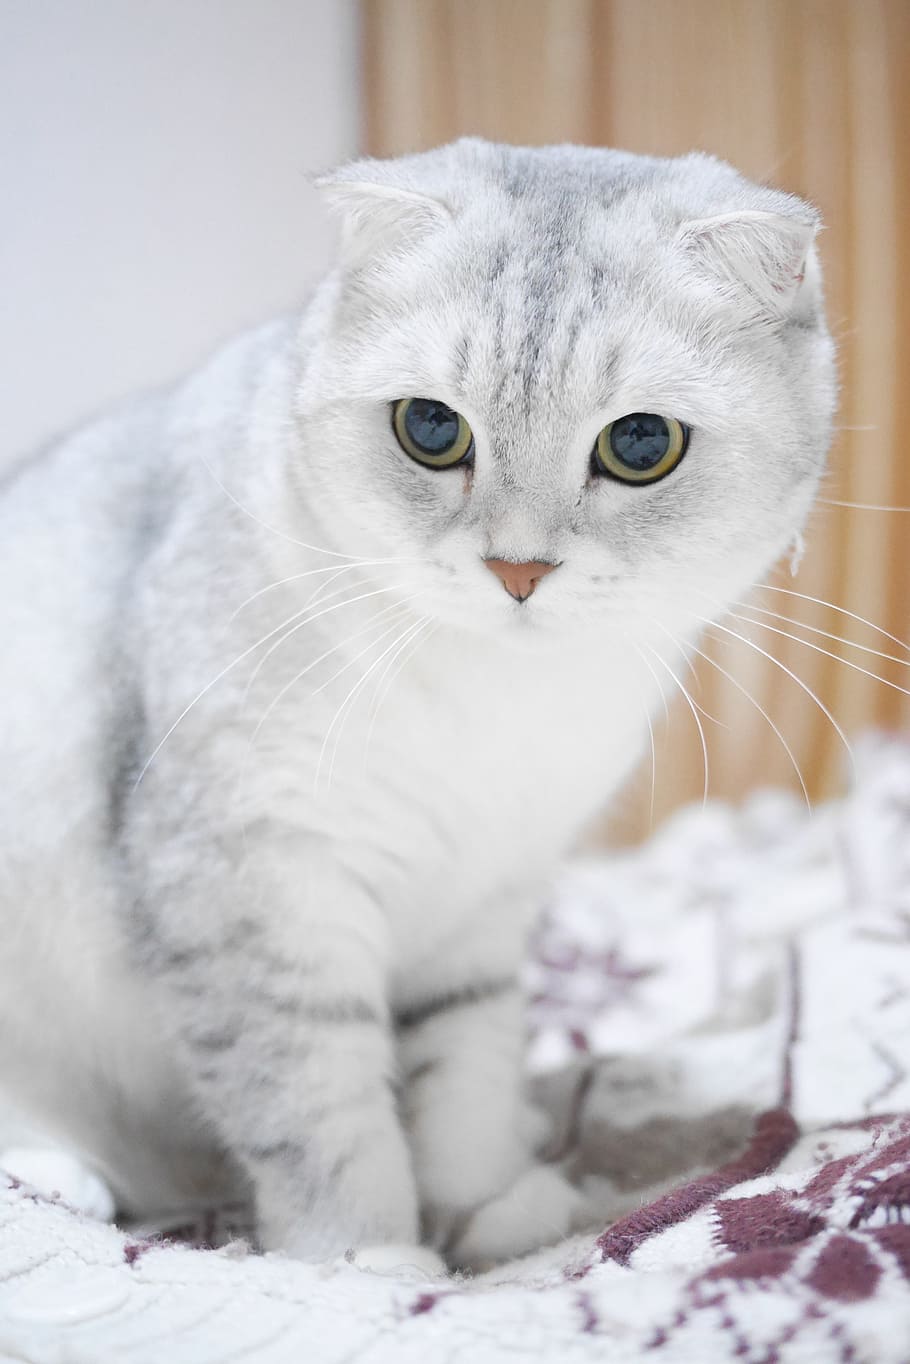 ロシアンブルー猫 スコティッシュフォールド猫 グラデーションカラー 猫 動物 ペット 飼い猫 家畜 哺乳類 動物テーマ Pxfuel